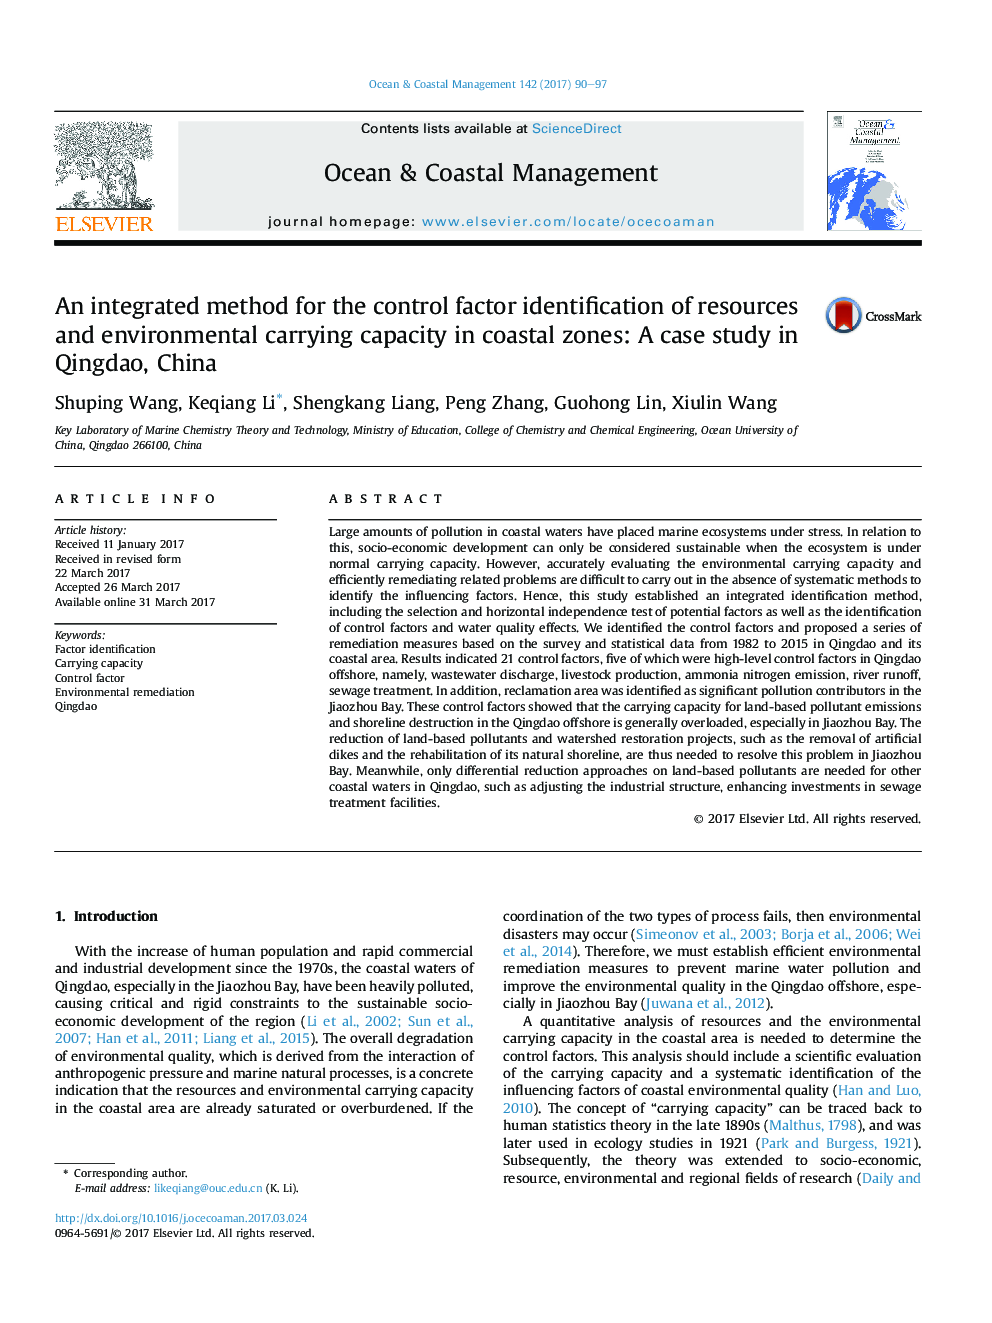 یک روش یکپارچه برای شناسایی عوامل کنترل کننده منابع و ظرفیت حمل و نقل محیطی در مناطق ساحلی: مطالعه موردی در چینگدائو، چین 